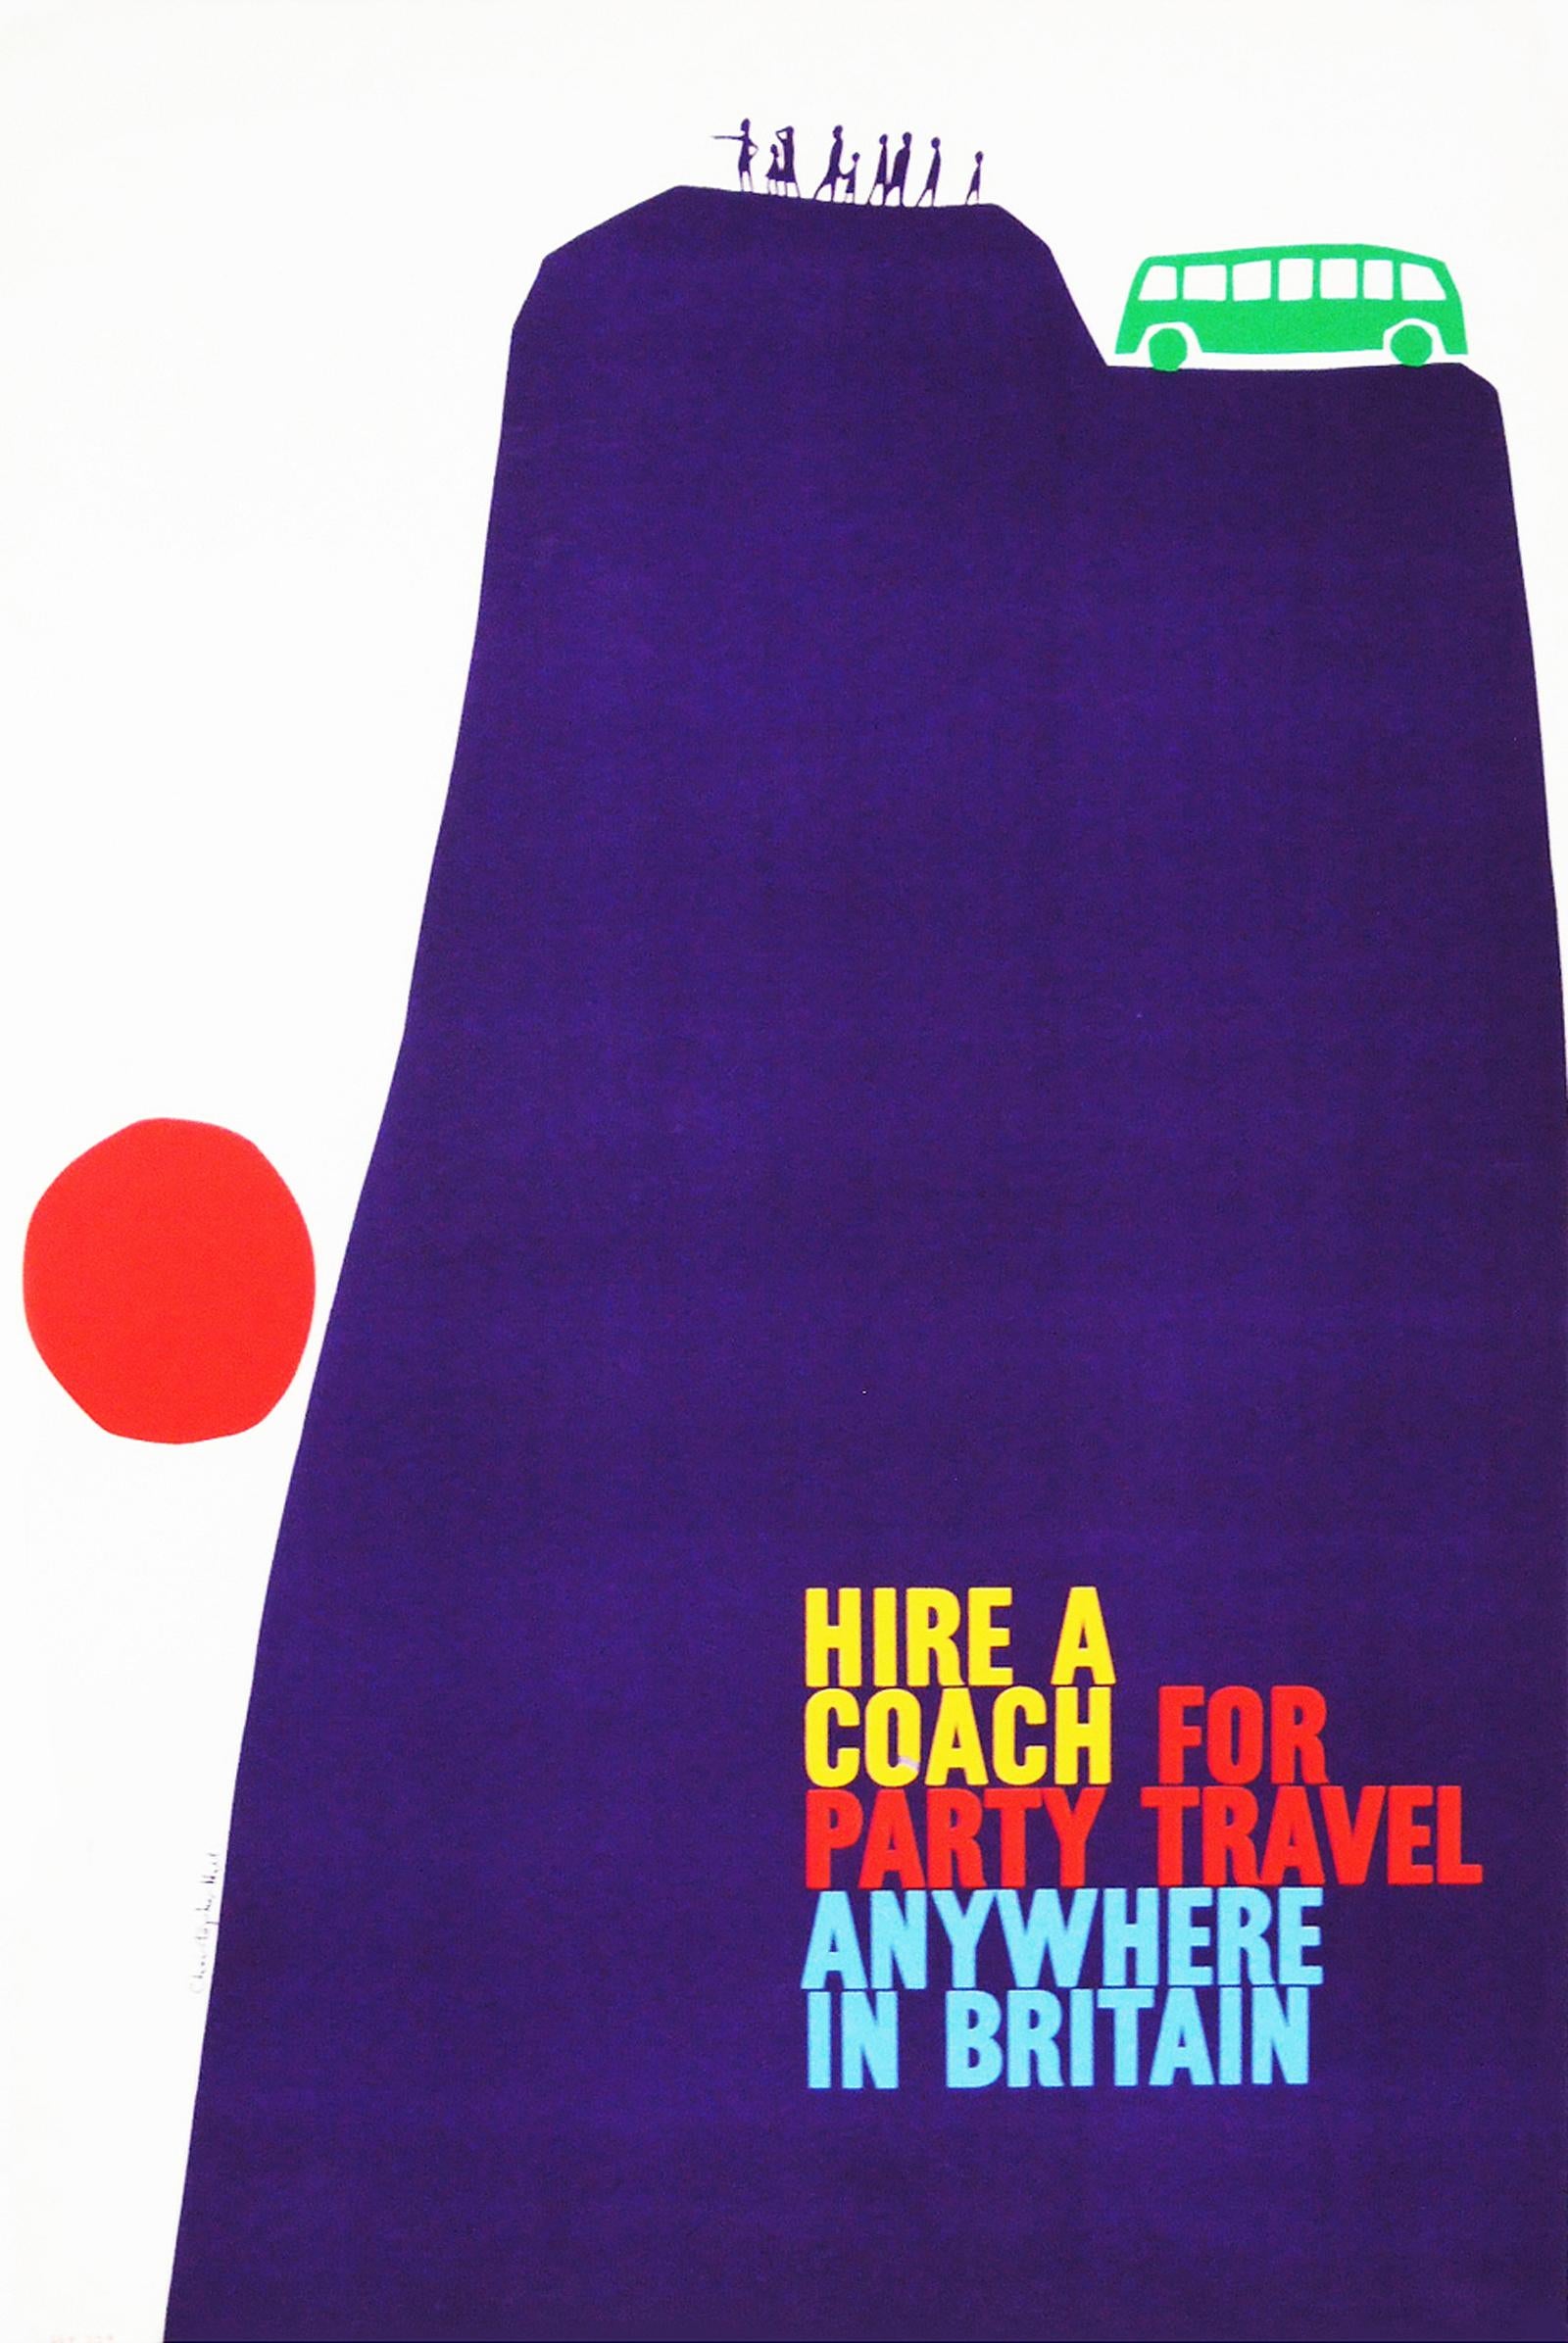 Mid-Century Modern 1960s British Travel Coach Poster Pop Art Design 'Cliff'